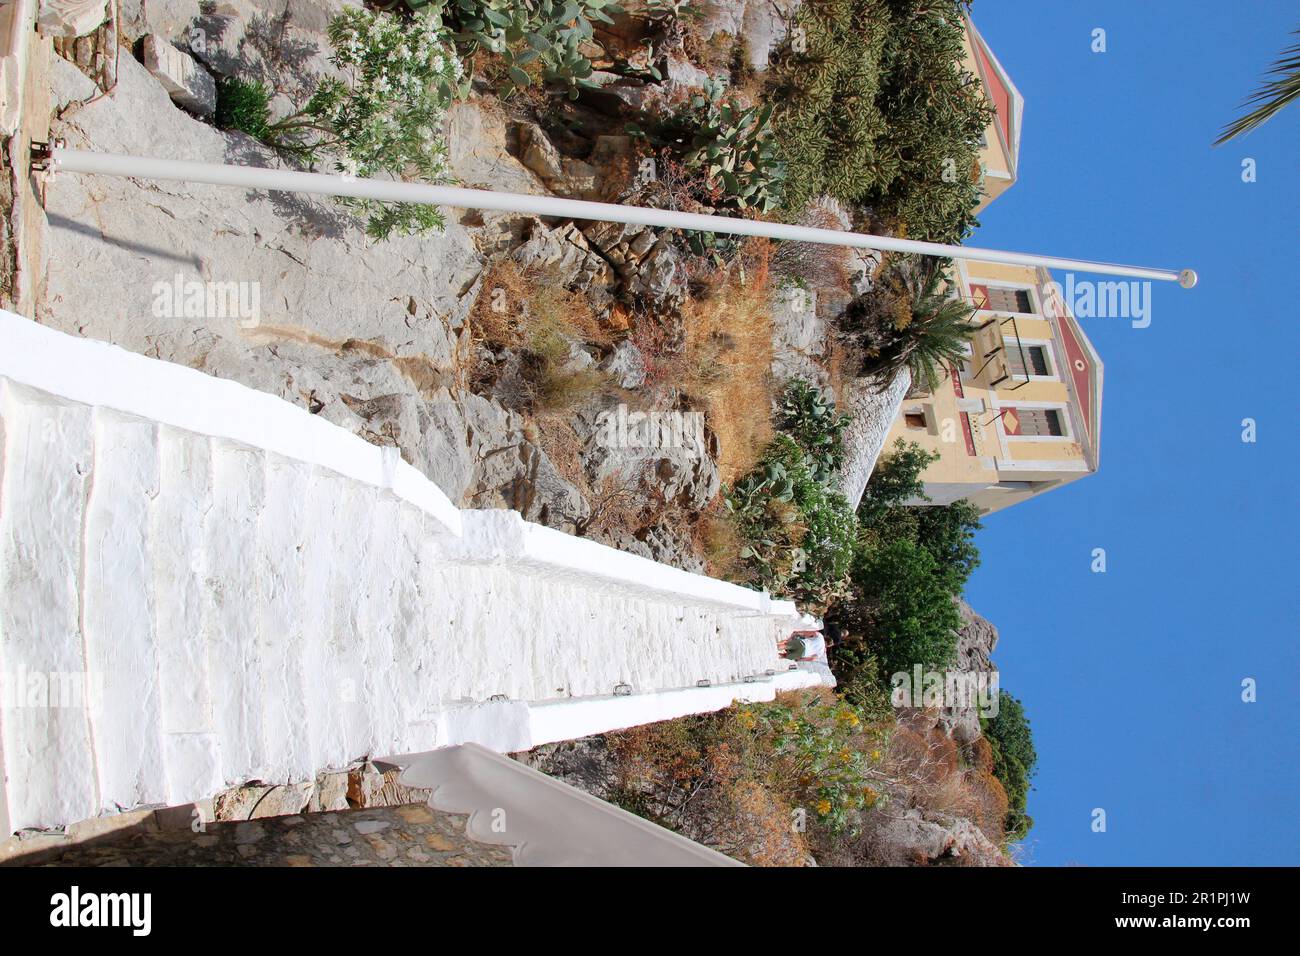 Grèce, Symi, village portuaire de Gialos, escaliers vers une maison résidentielle, être humain, mât, abruptement Banque D'Images